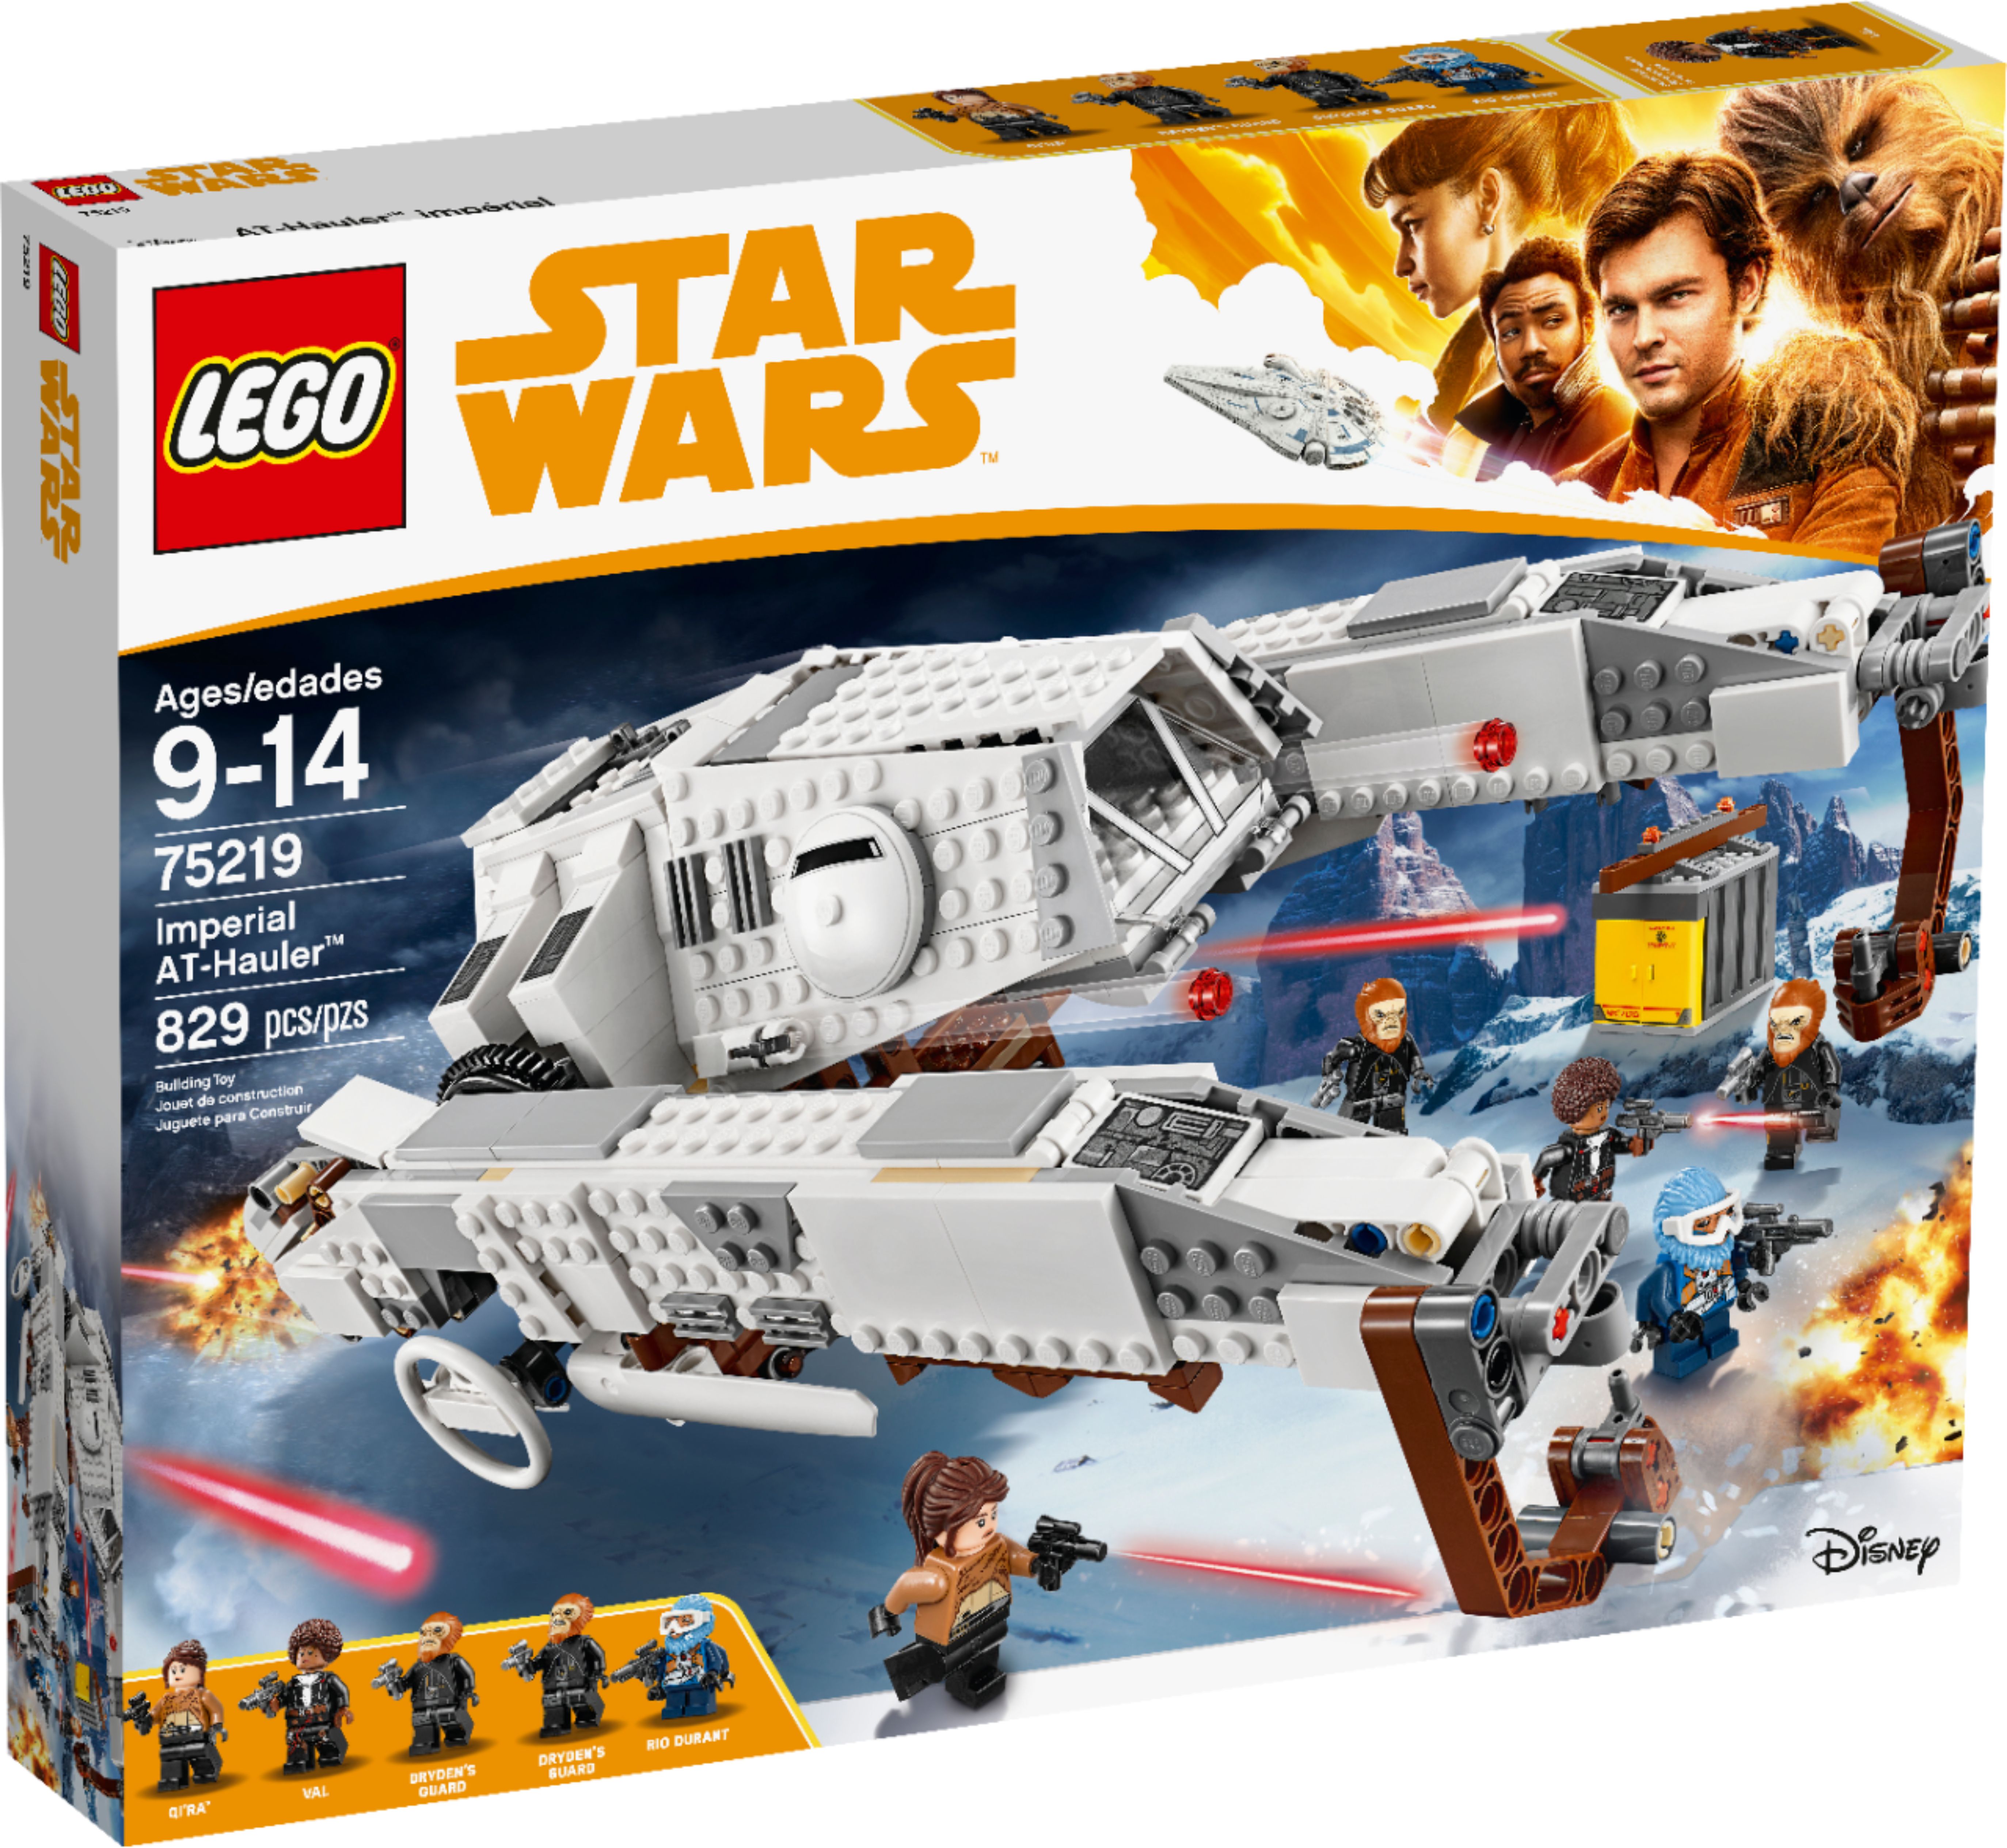 LEGO Star Wars Imperial AT-Hauler Set 75219 - US